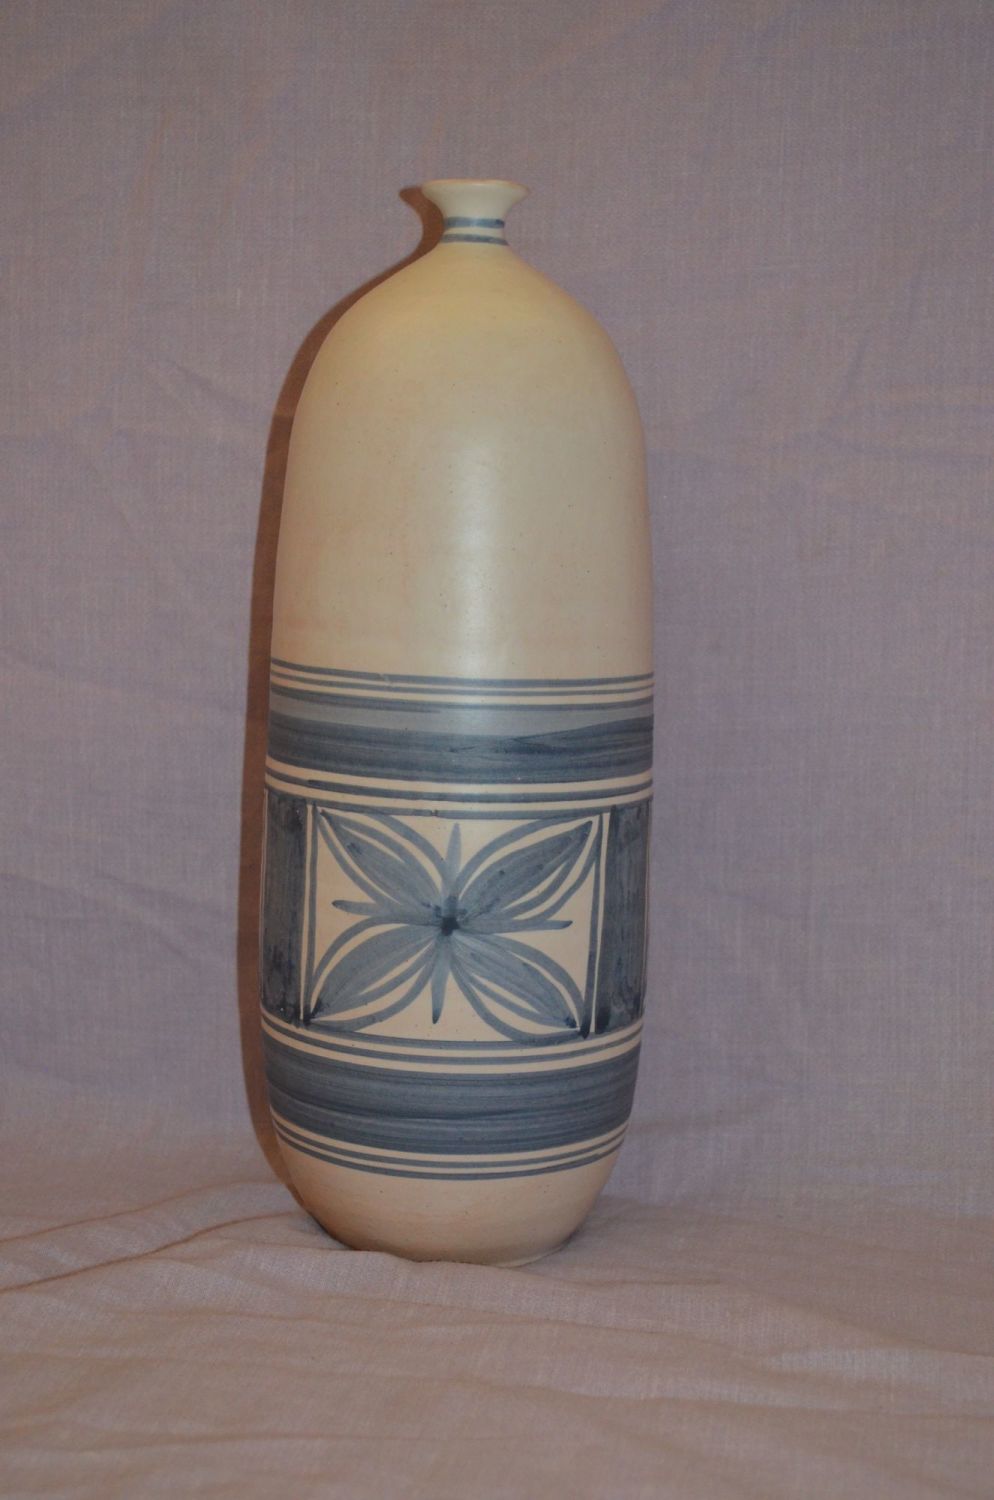 David Beas Narrow Neck Pottery Vase. Tall